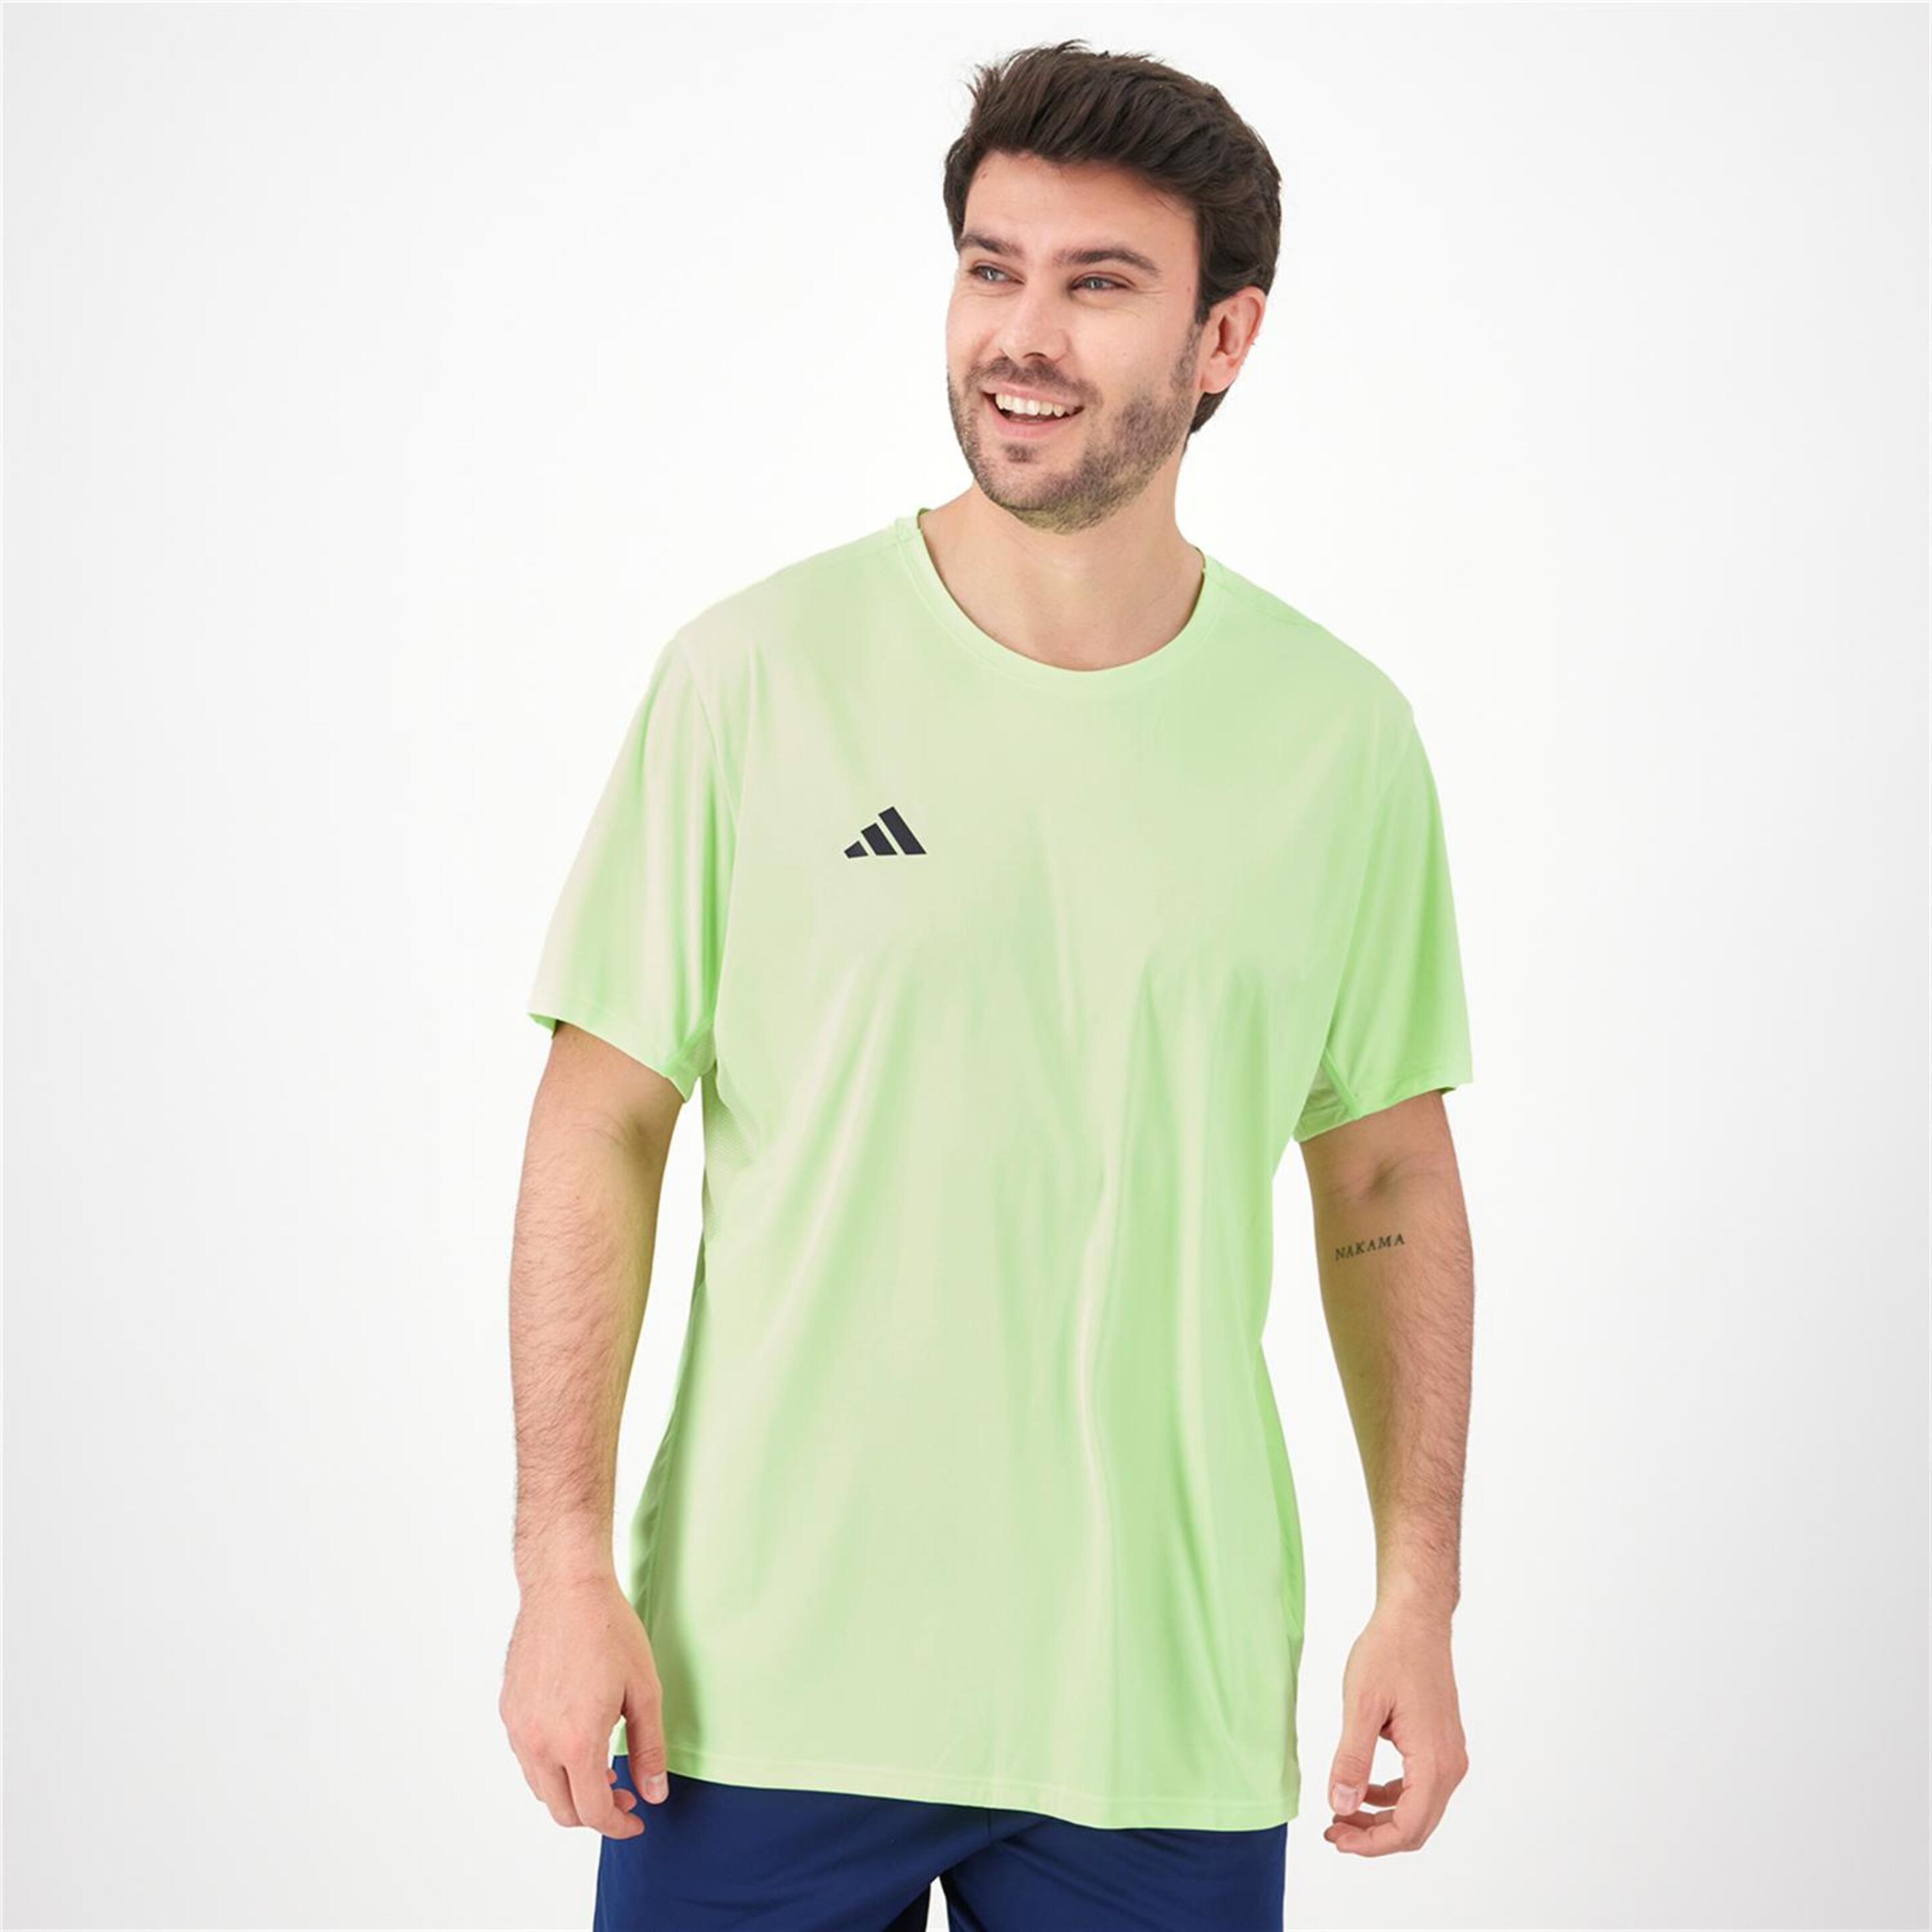 Camiseta adidas - azul - Camiseta Running Hombre